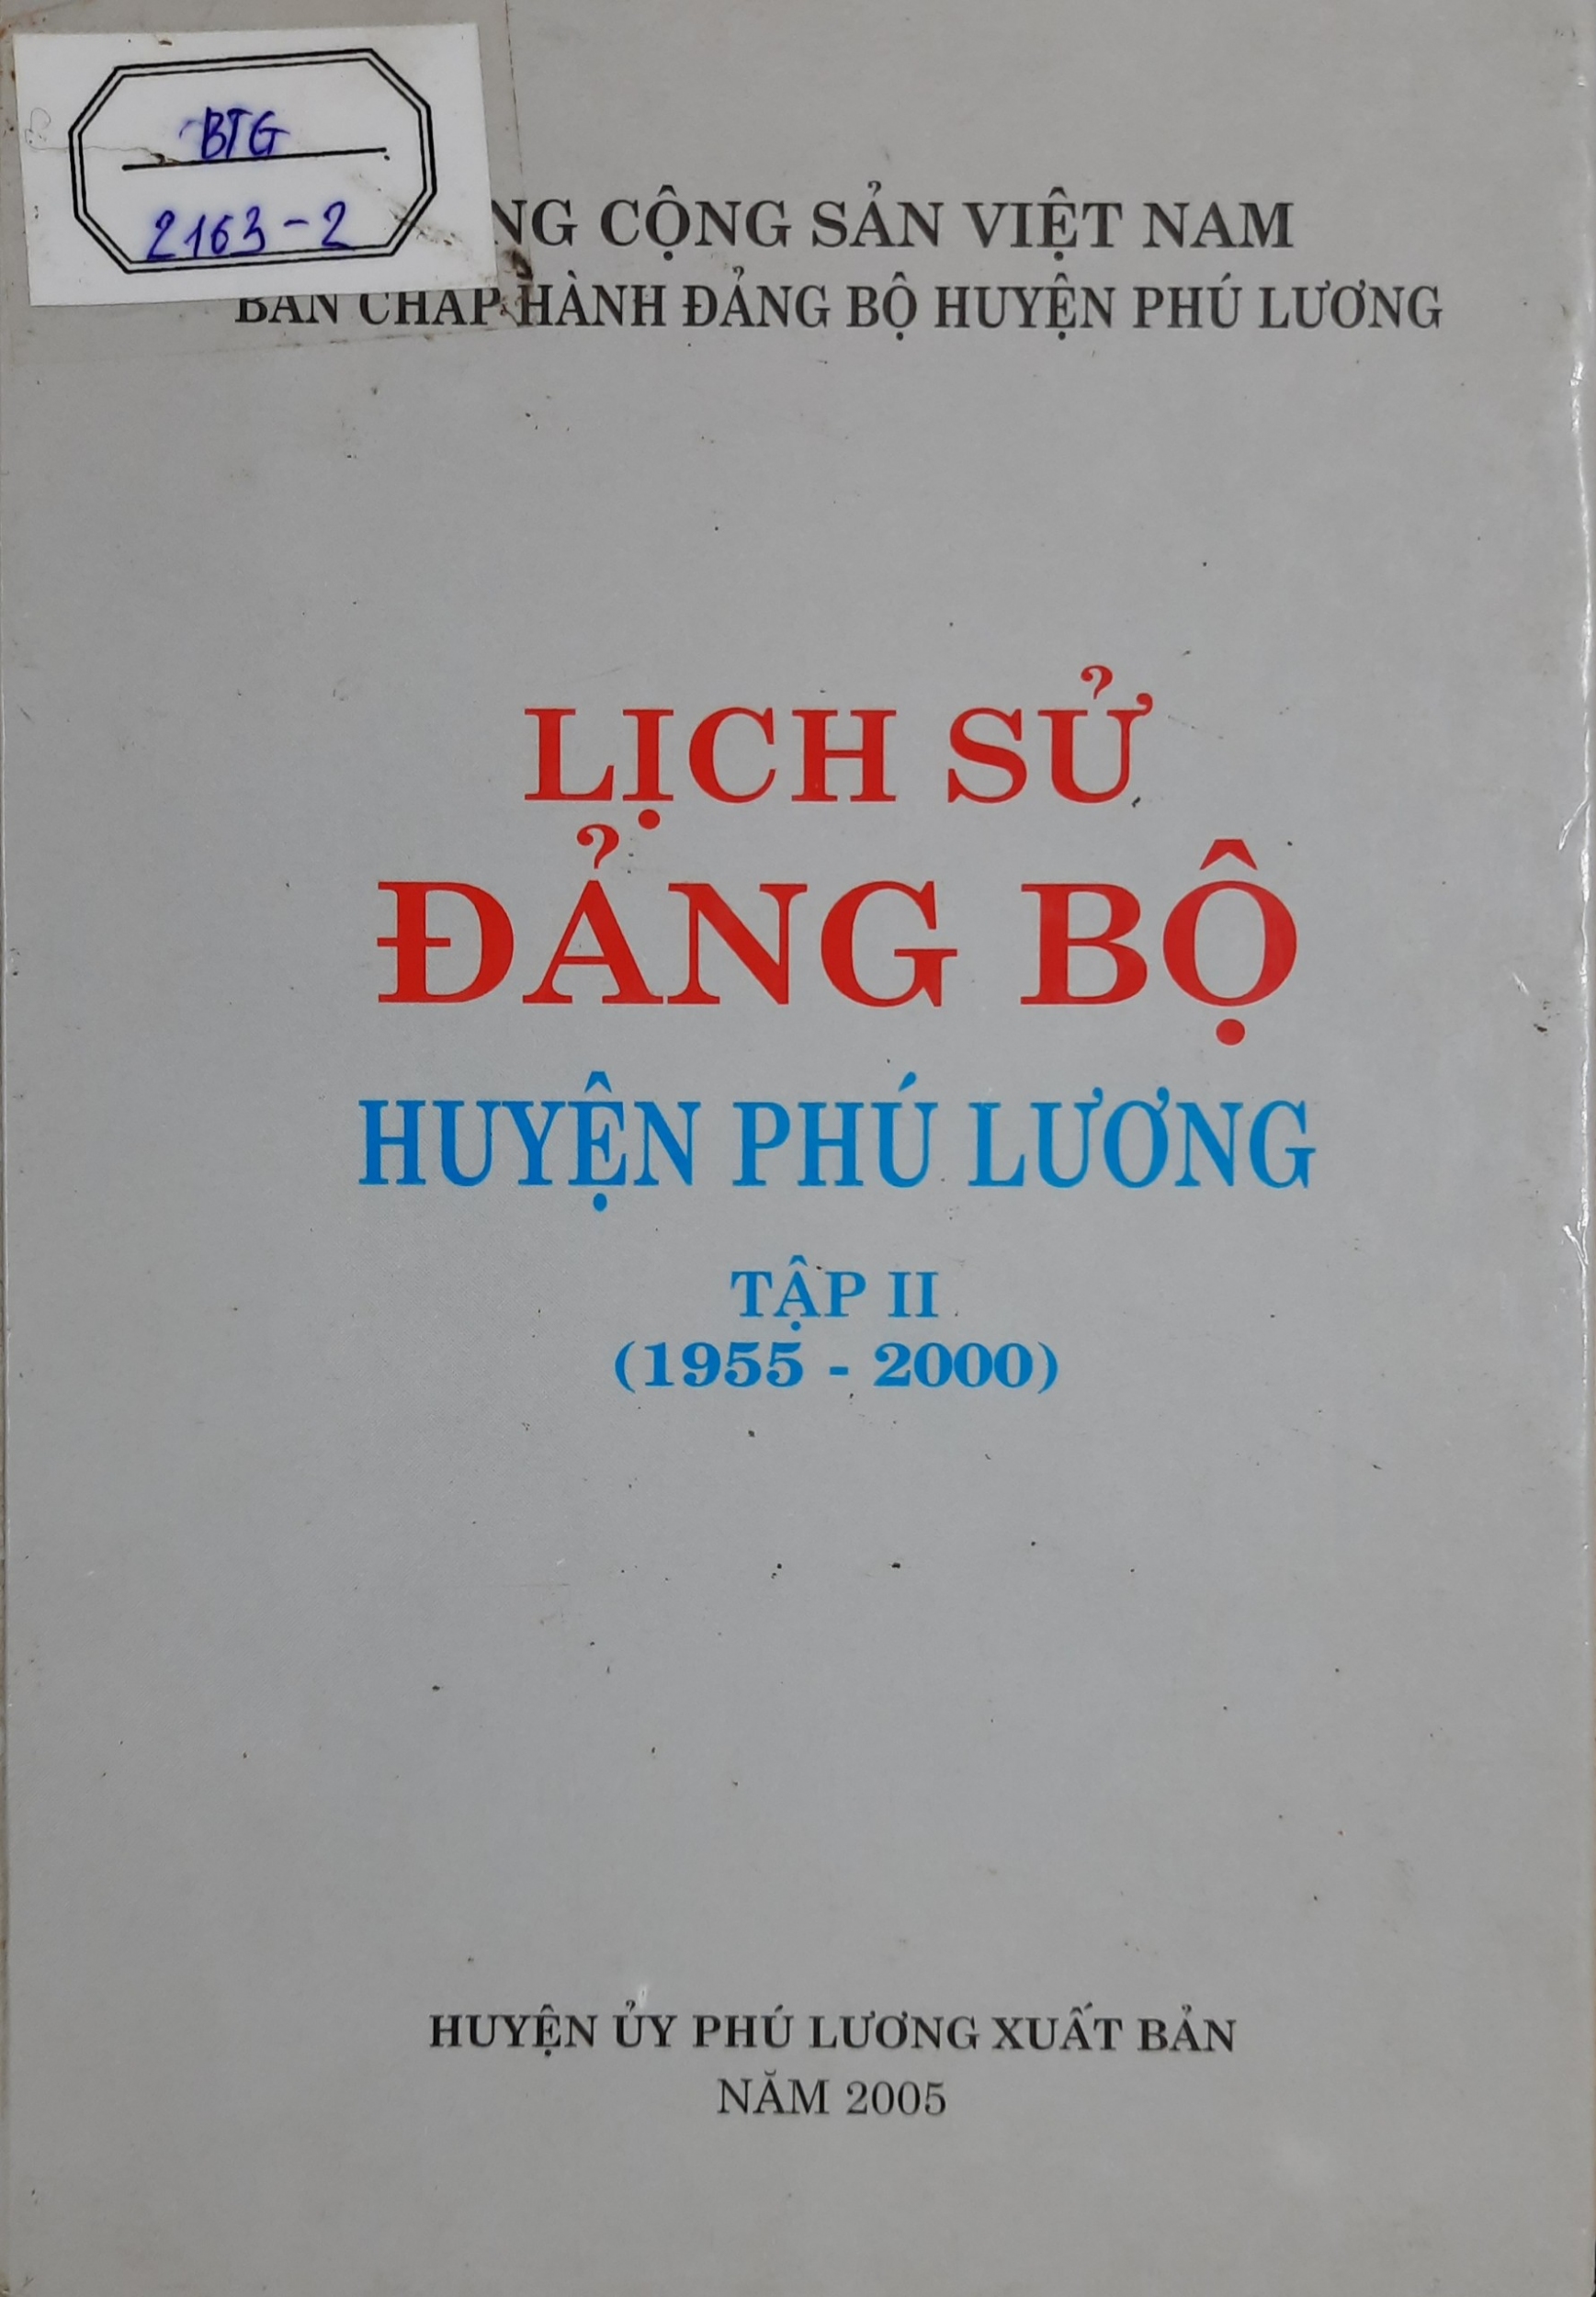 Lịch sử Đảng bộ huyện Phú lương, tập II (1955 - 2000)